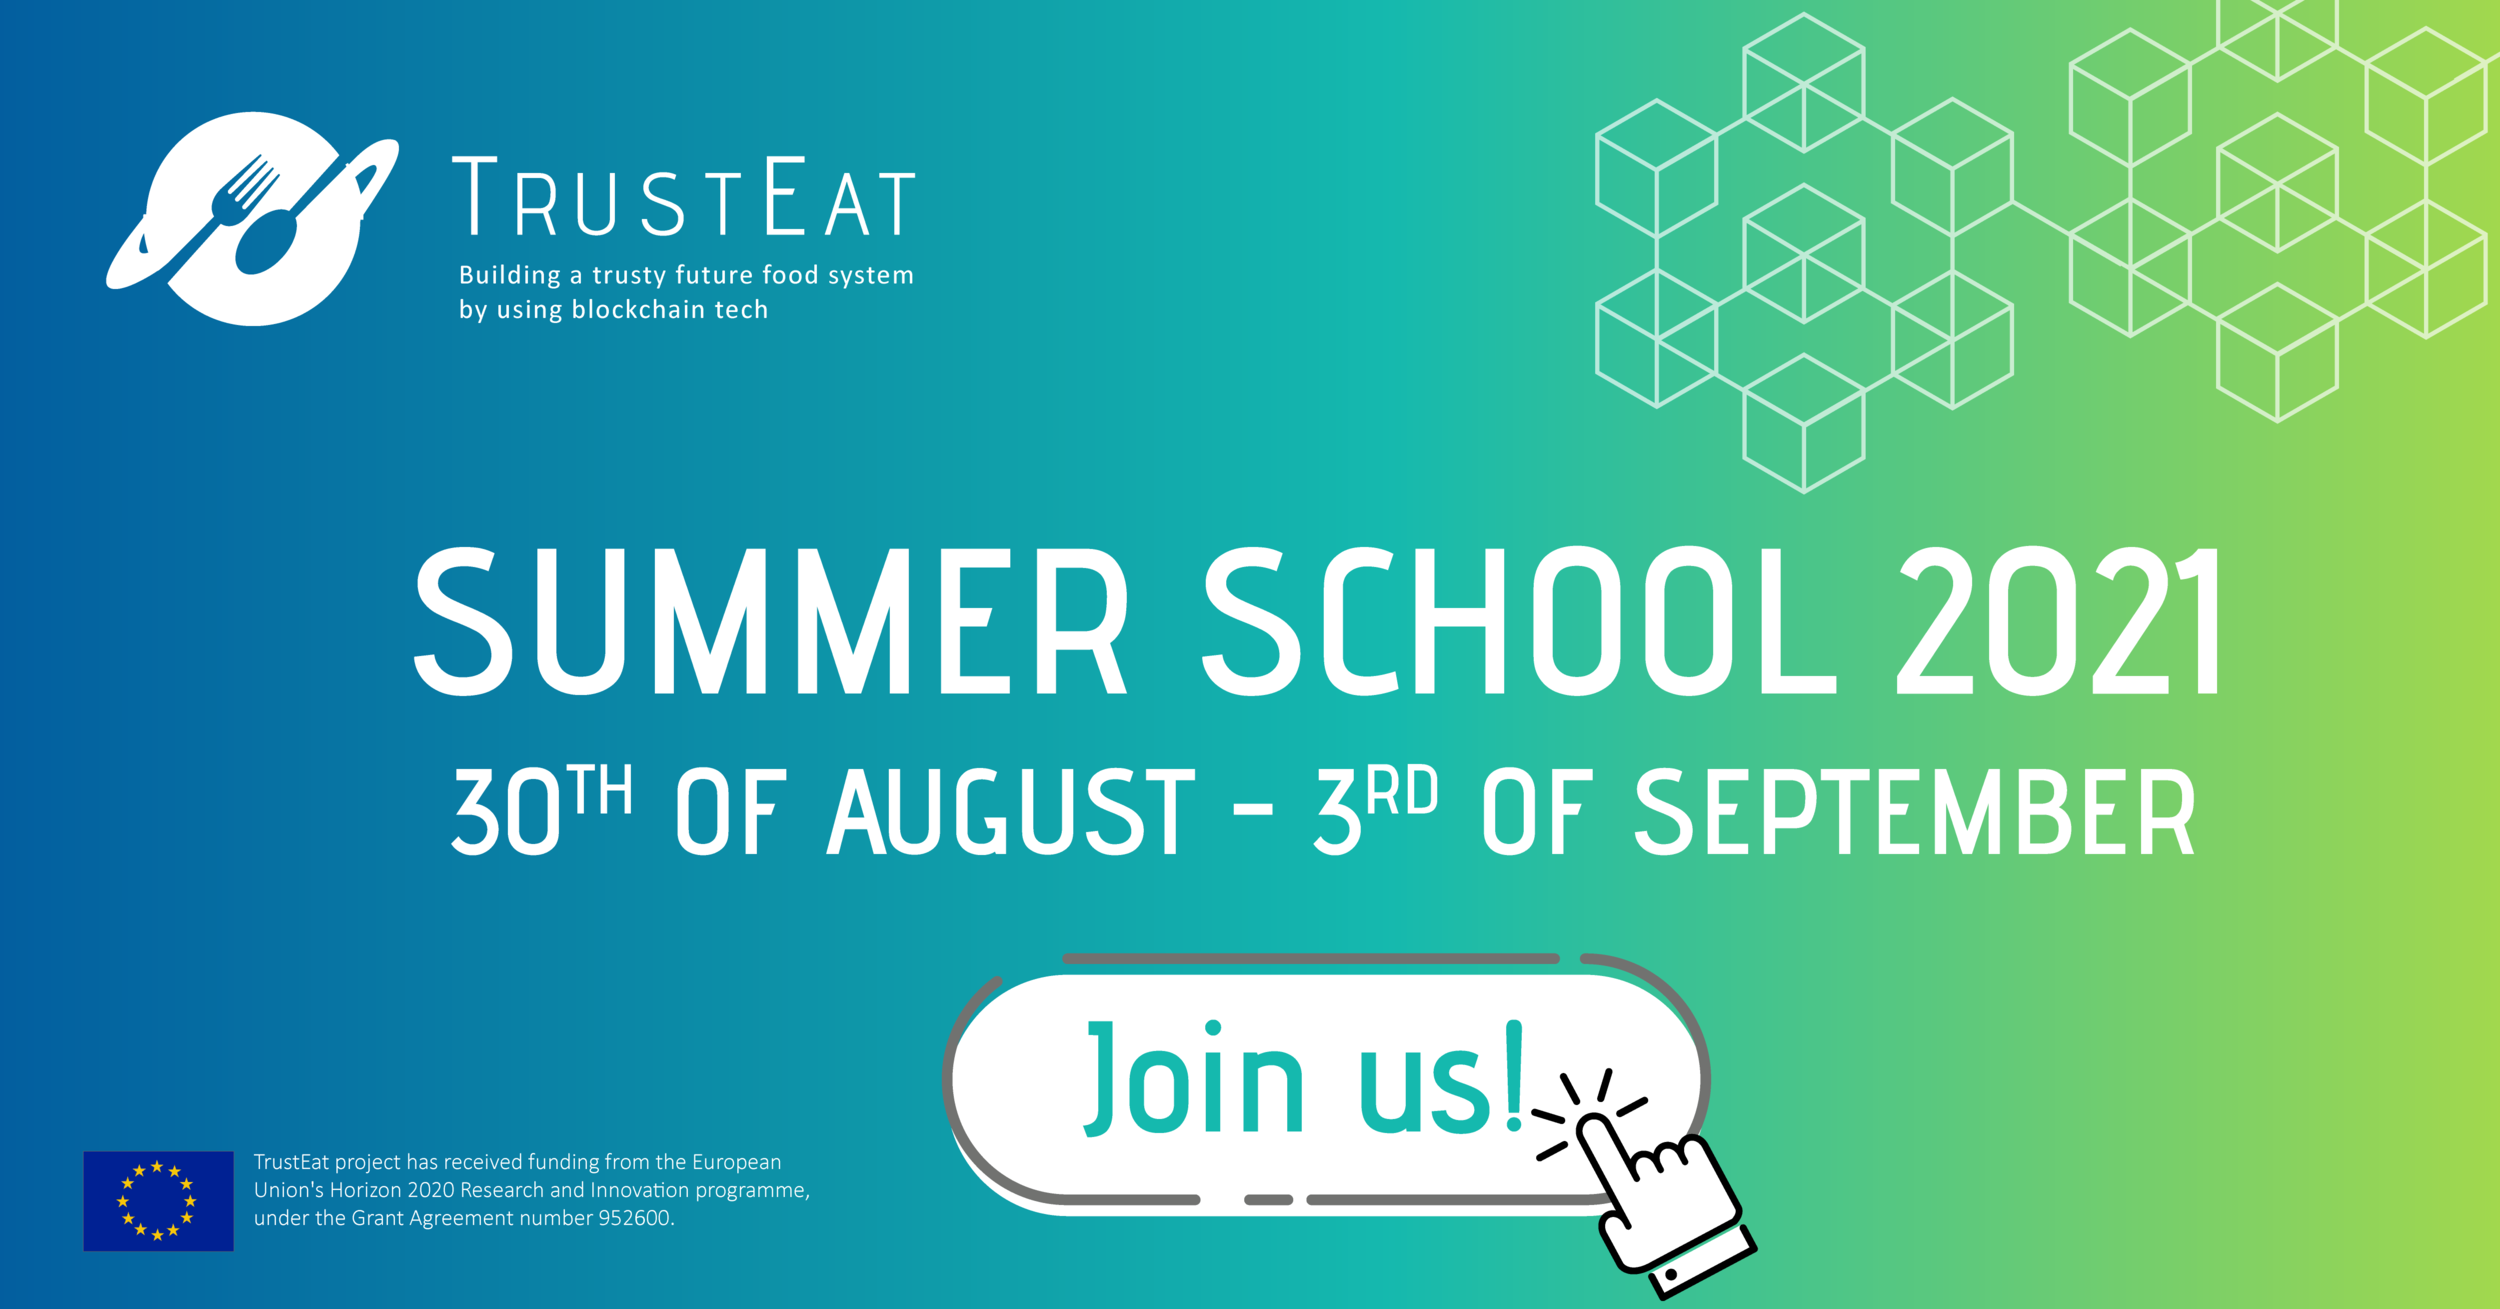 TrustEat Summer School 2021 is coming your way!